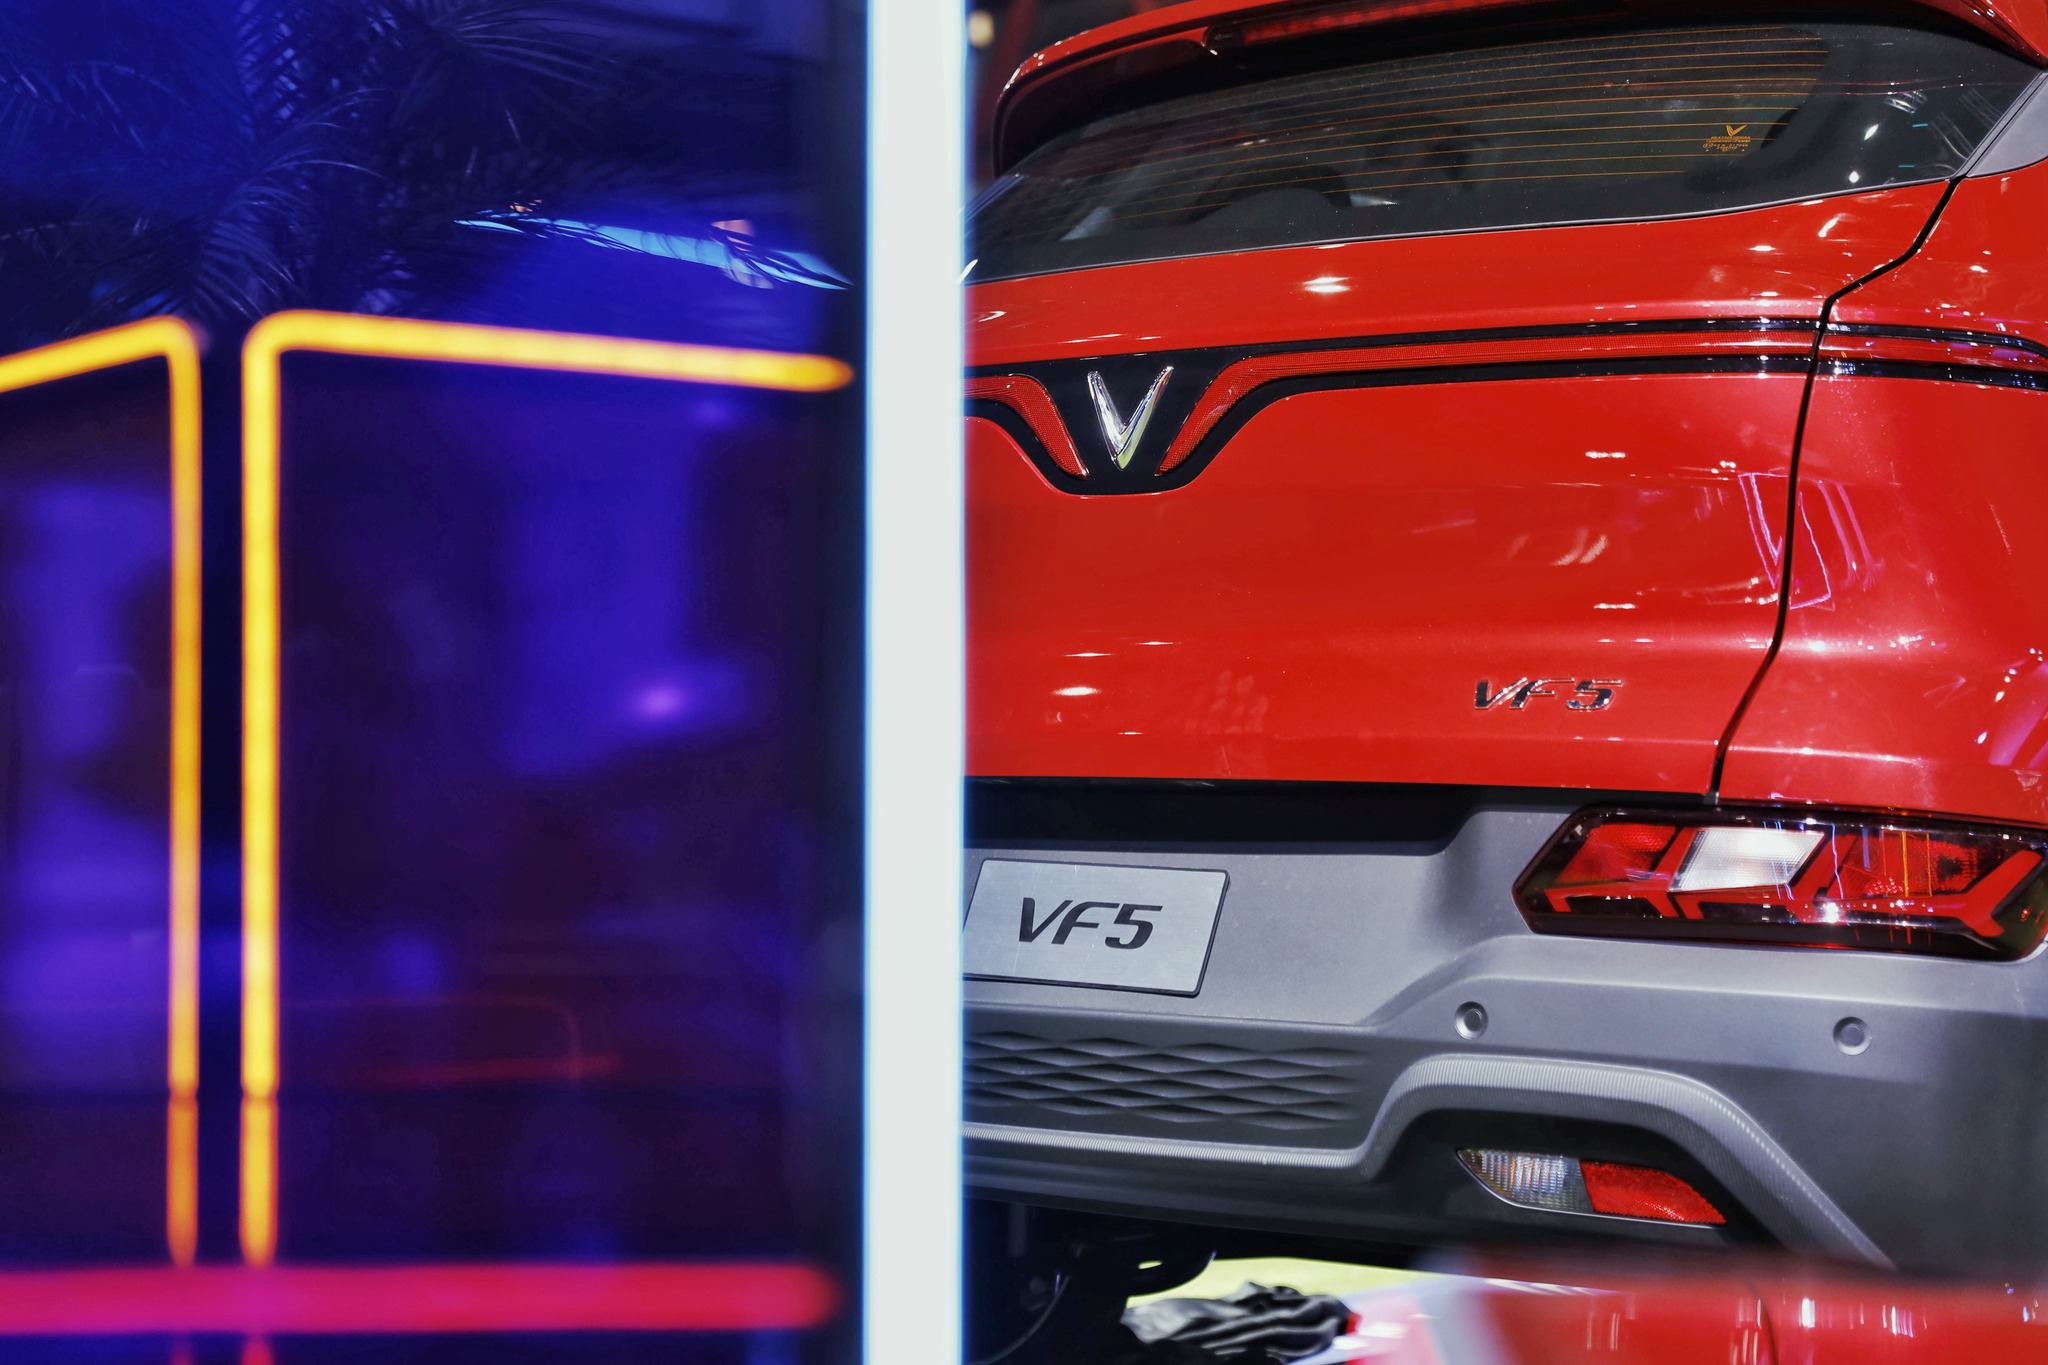 Chân dung VF 5 - mẫu xe VinFast Tổng thống Indonesia đặt bút ký lên nắp capo: Đây là thứ 'uy lực' nhất!- Ảnh 5.